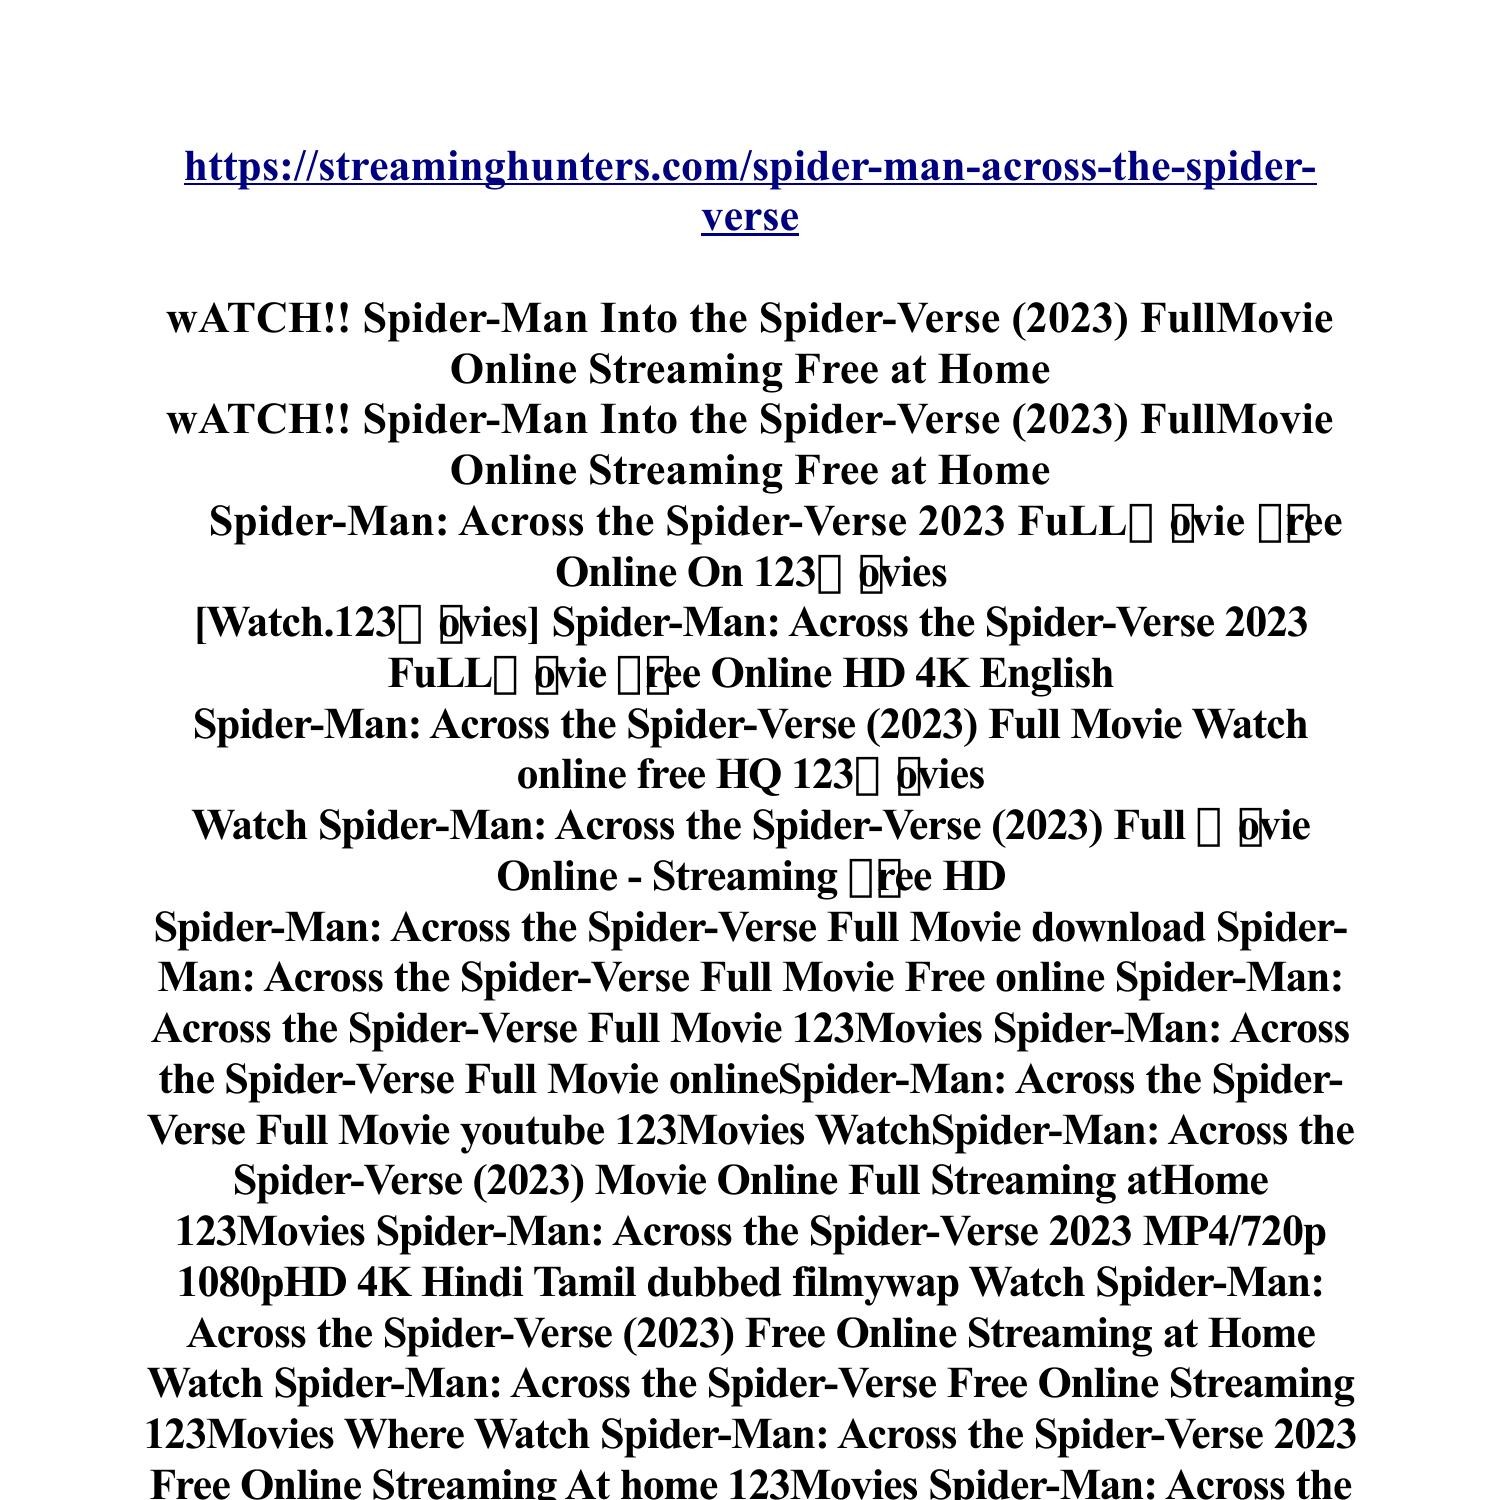 Watch Spider-Man Across The Spider-Verse 2023 FullMOvie Free